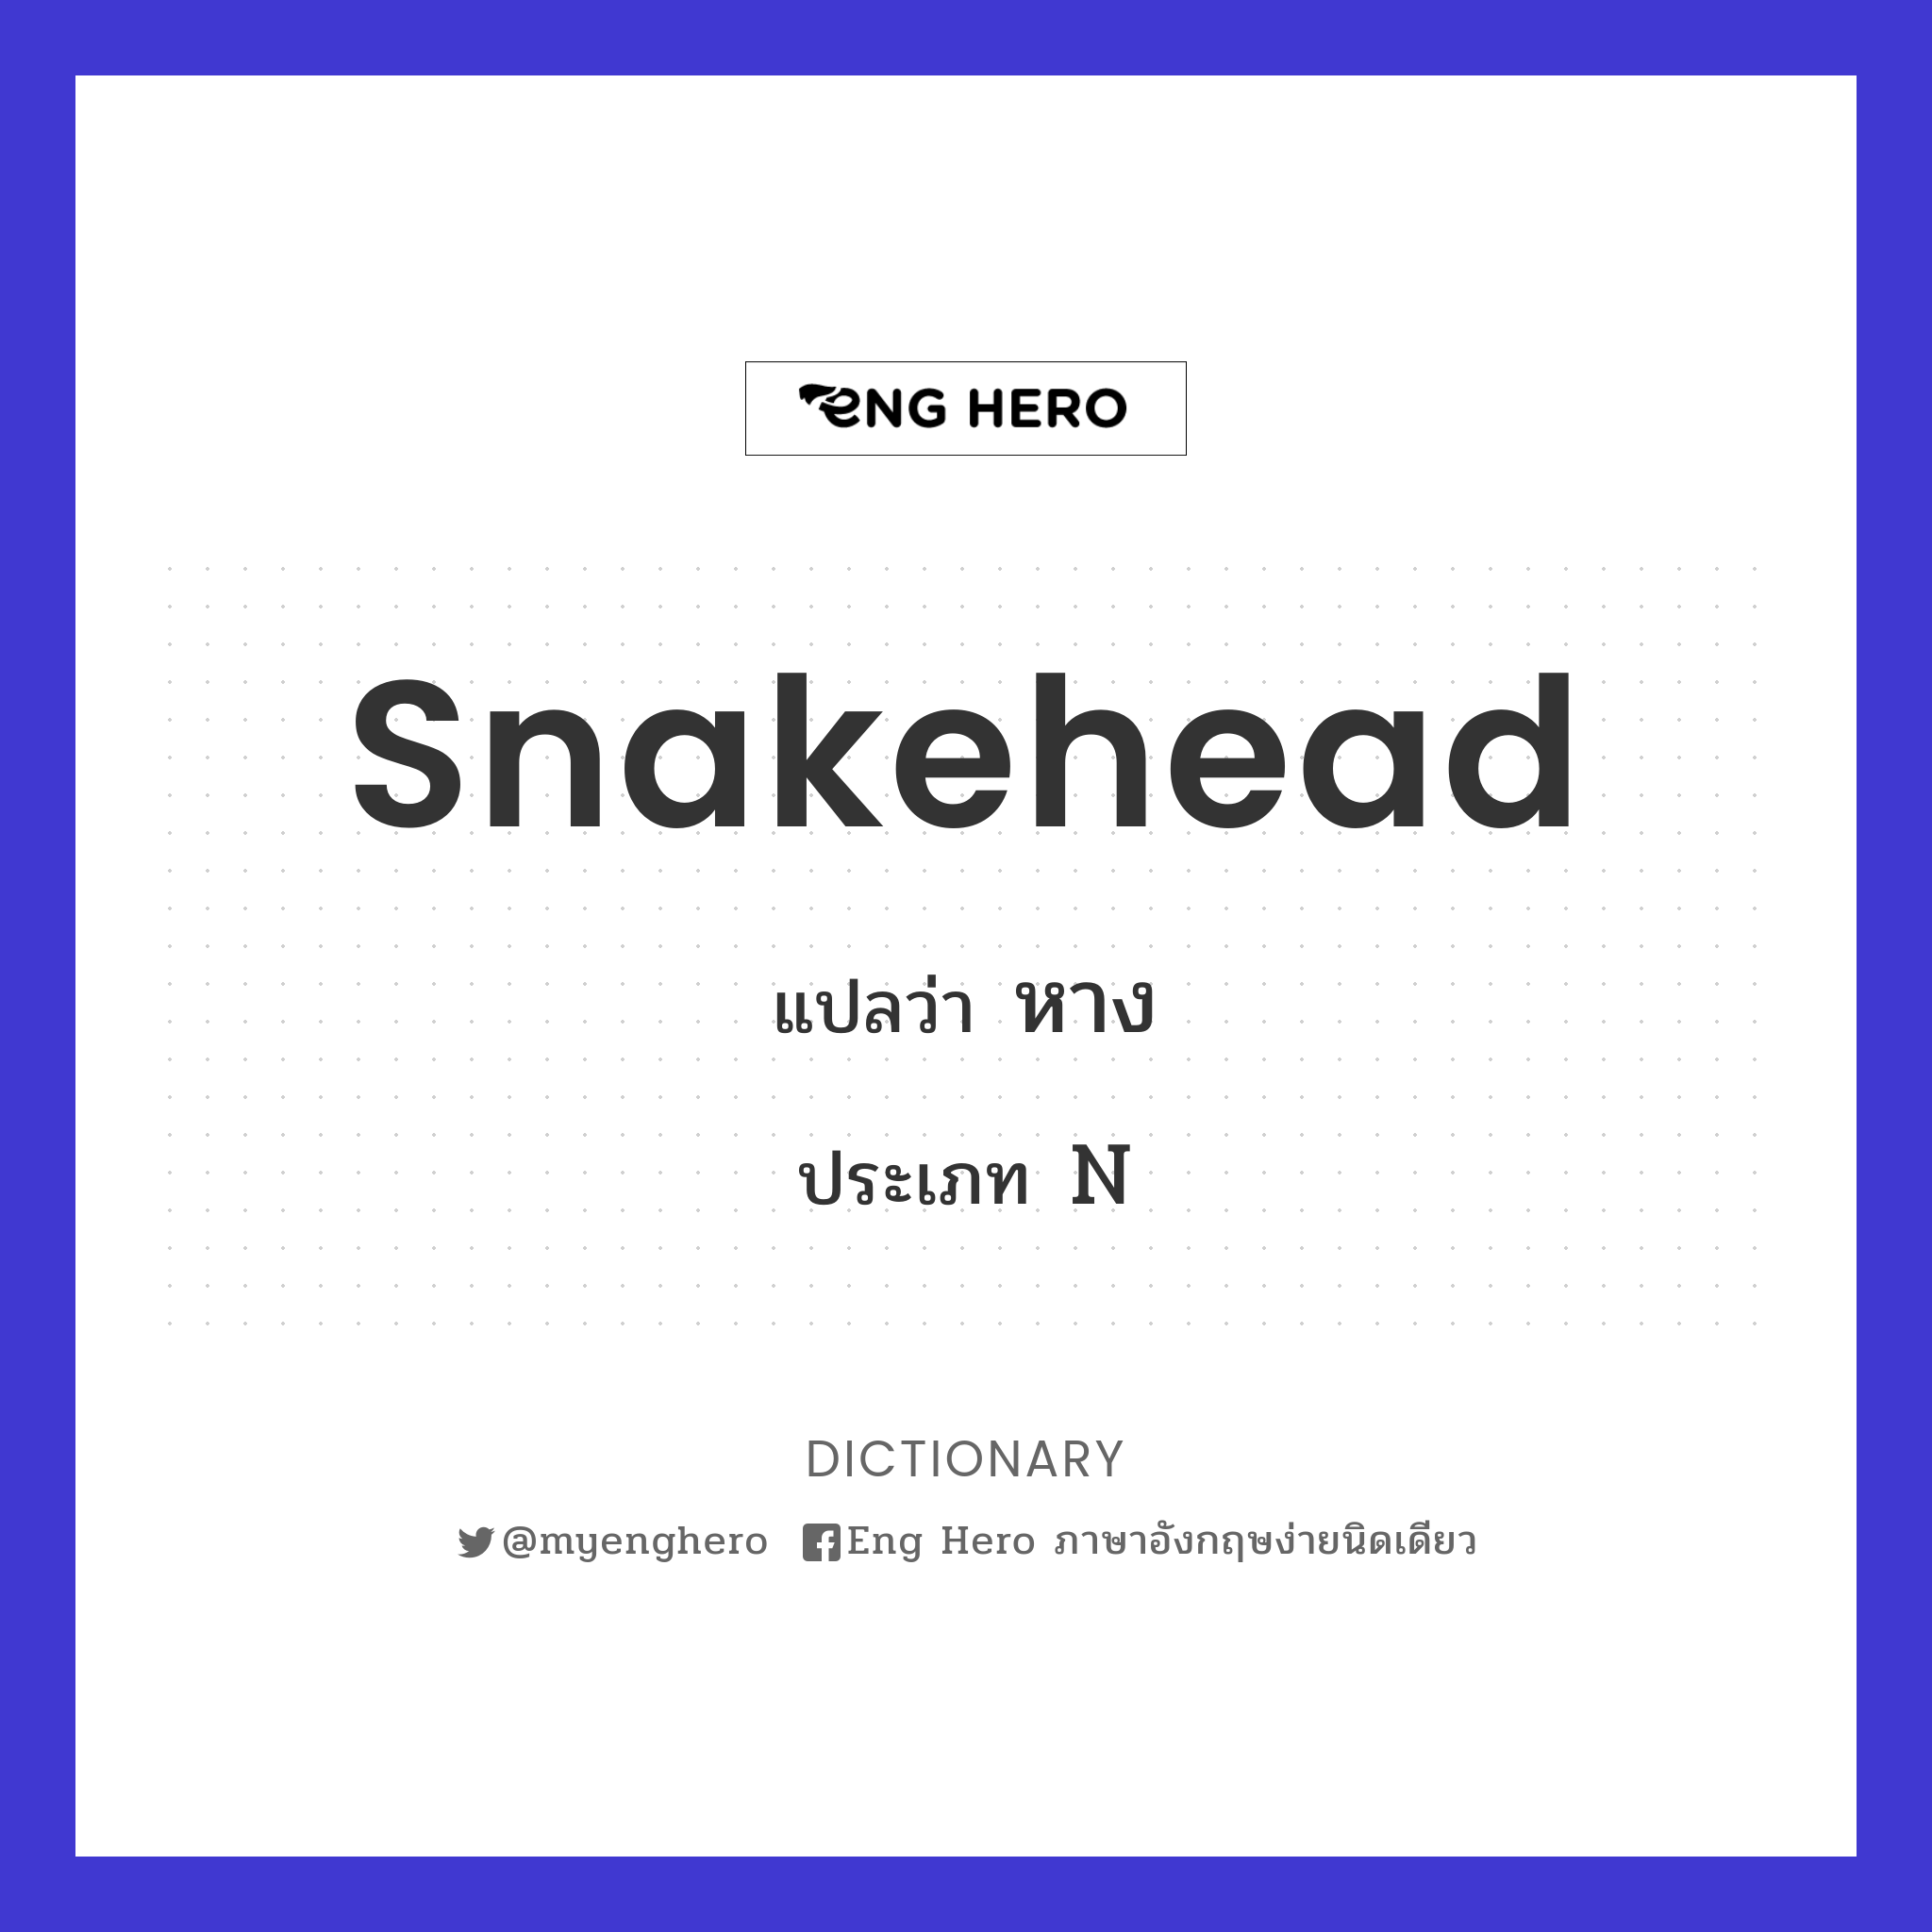 snakehead